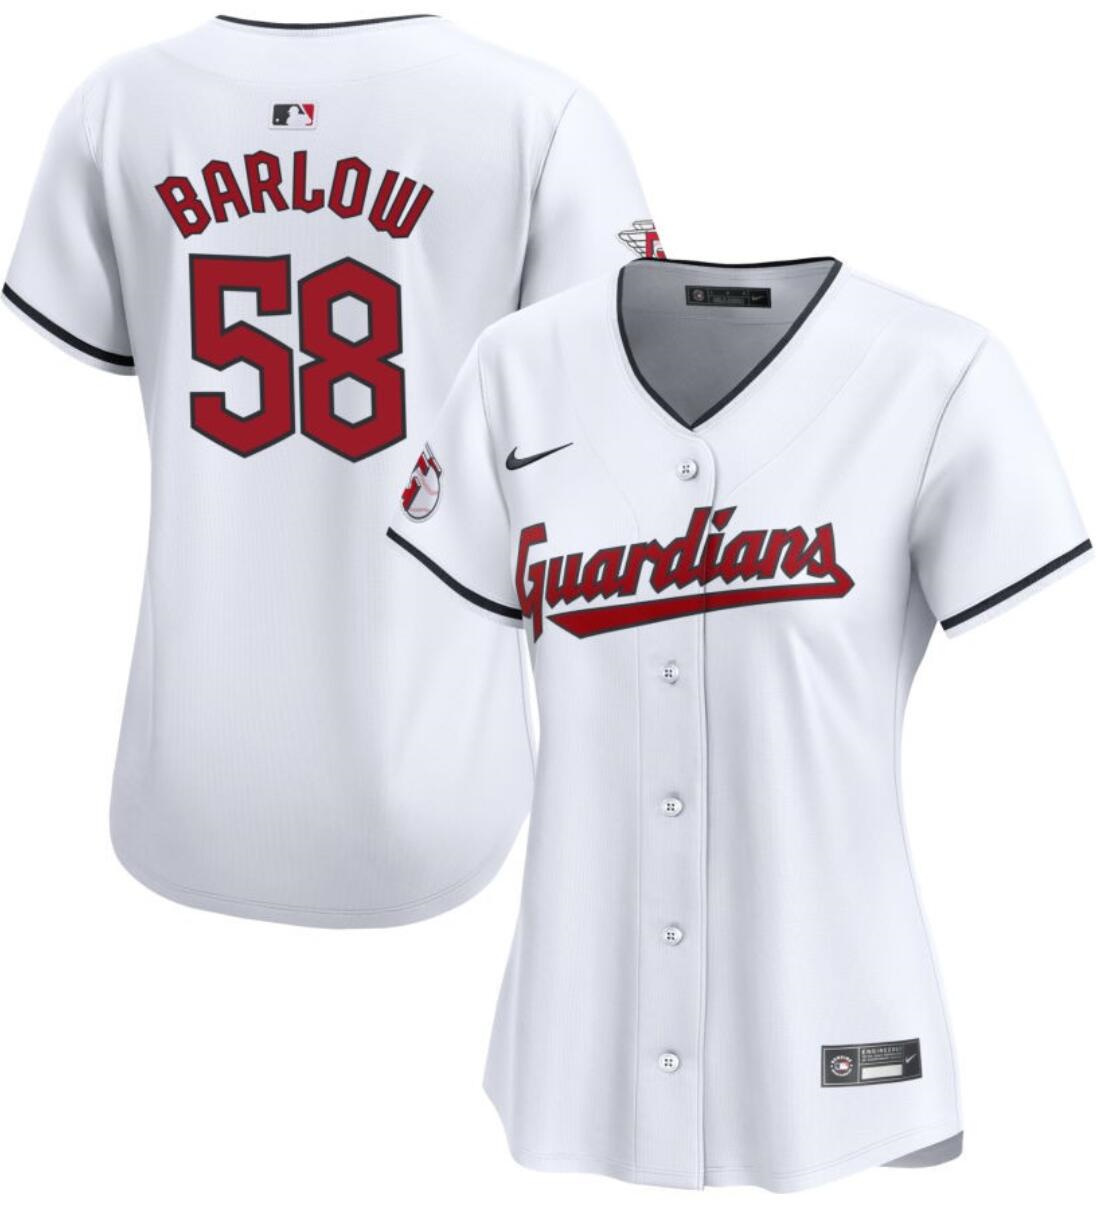 Women's Cleveland Guardians #58 Scott Barlow White Stitched Baseball Jersey(Run Small)